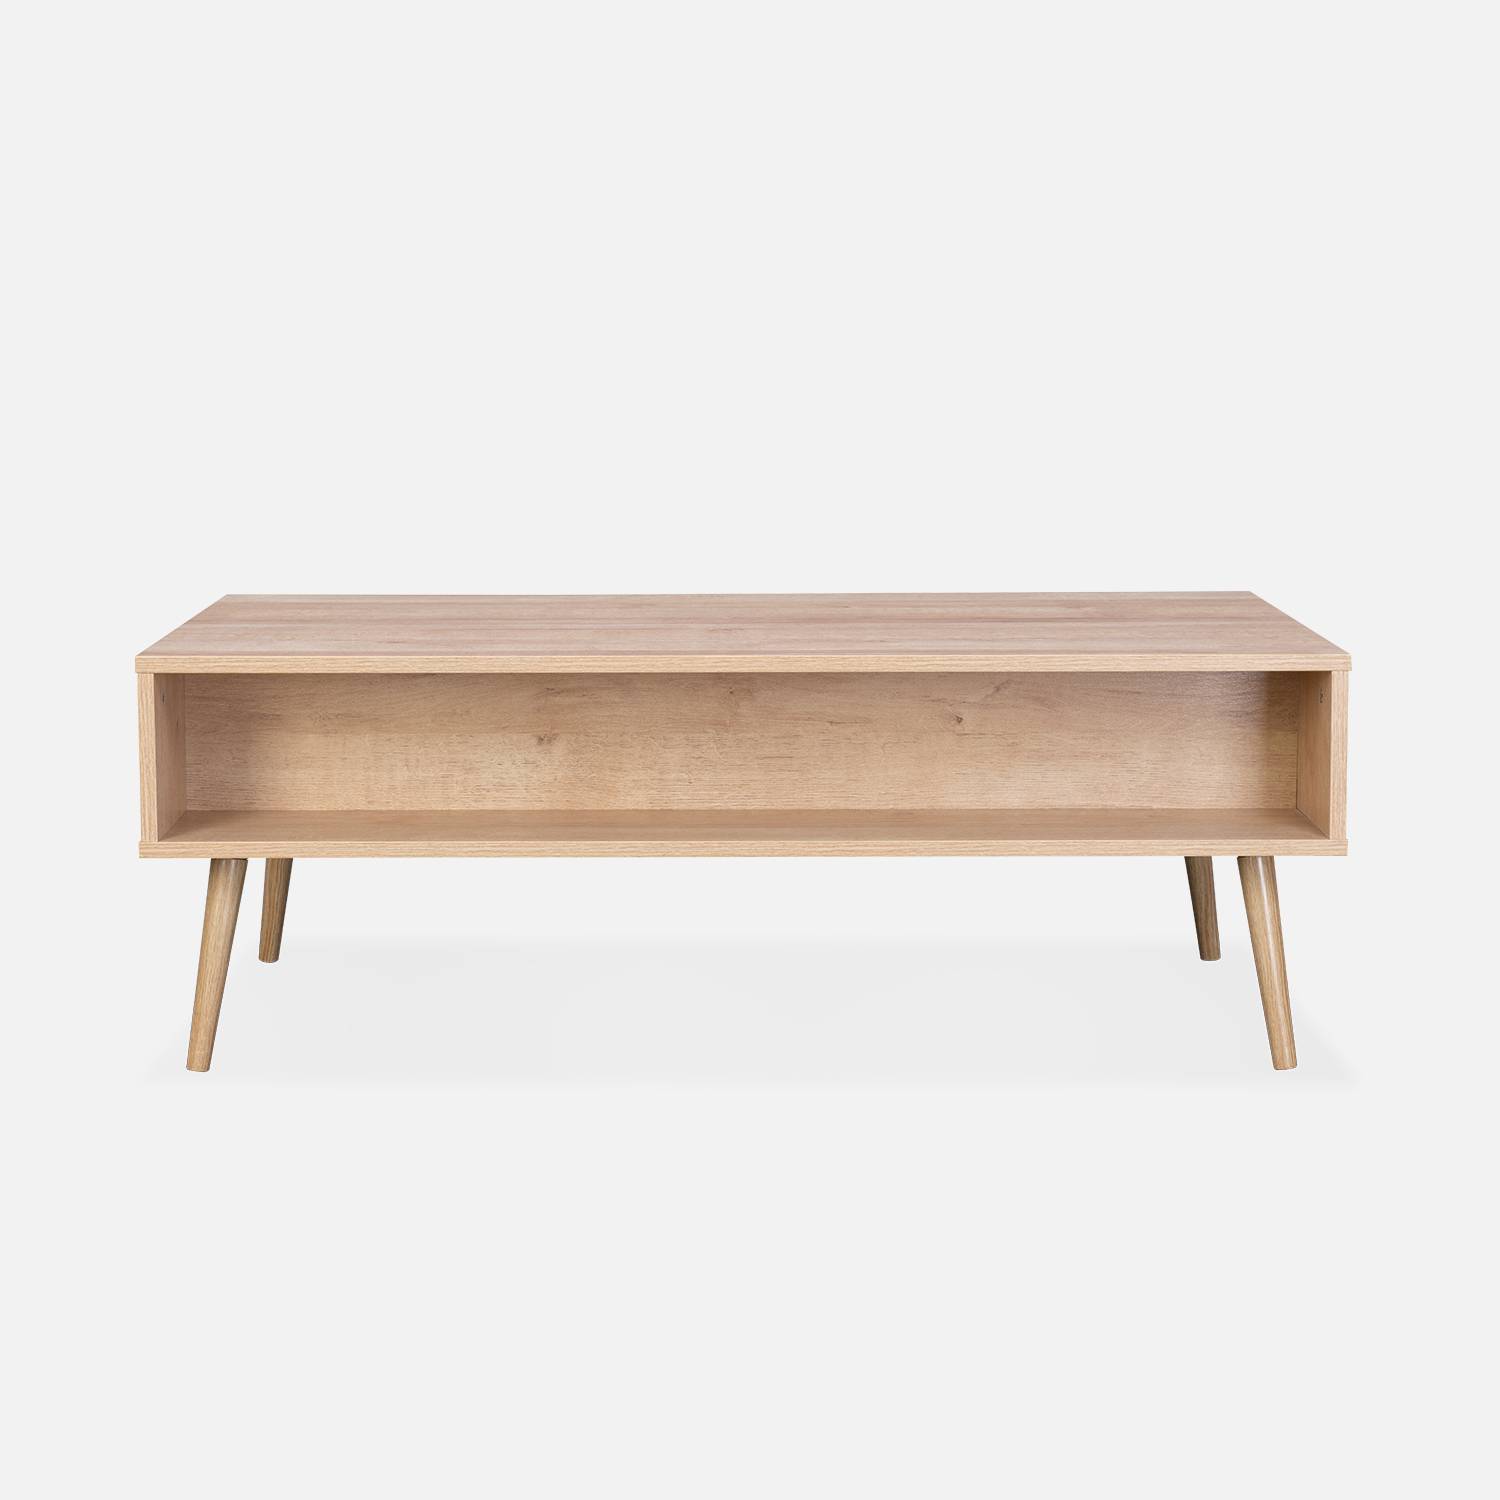 Table basse en cannage 110 x 59 x 39 cm - Bohème - Naturel, 1 tiroir, 1 espace de rangement, pieds scandinaves,sweeek,Photo4